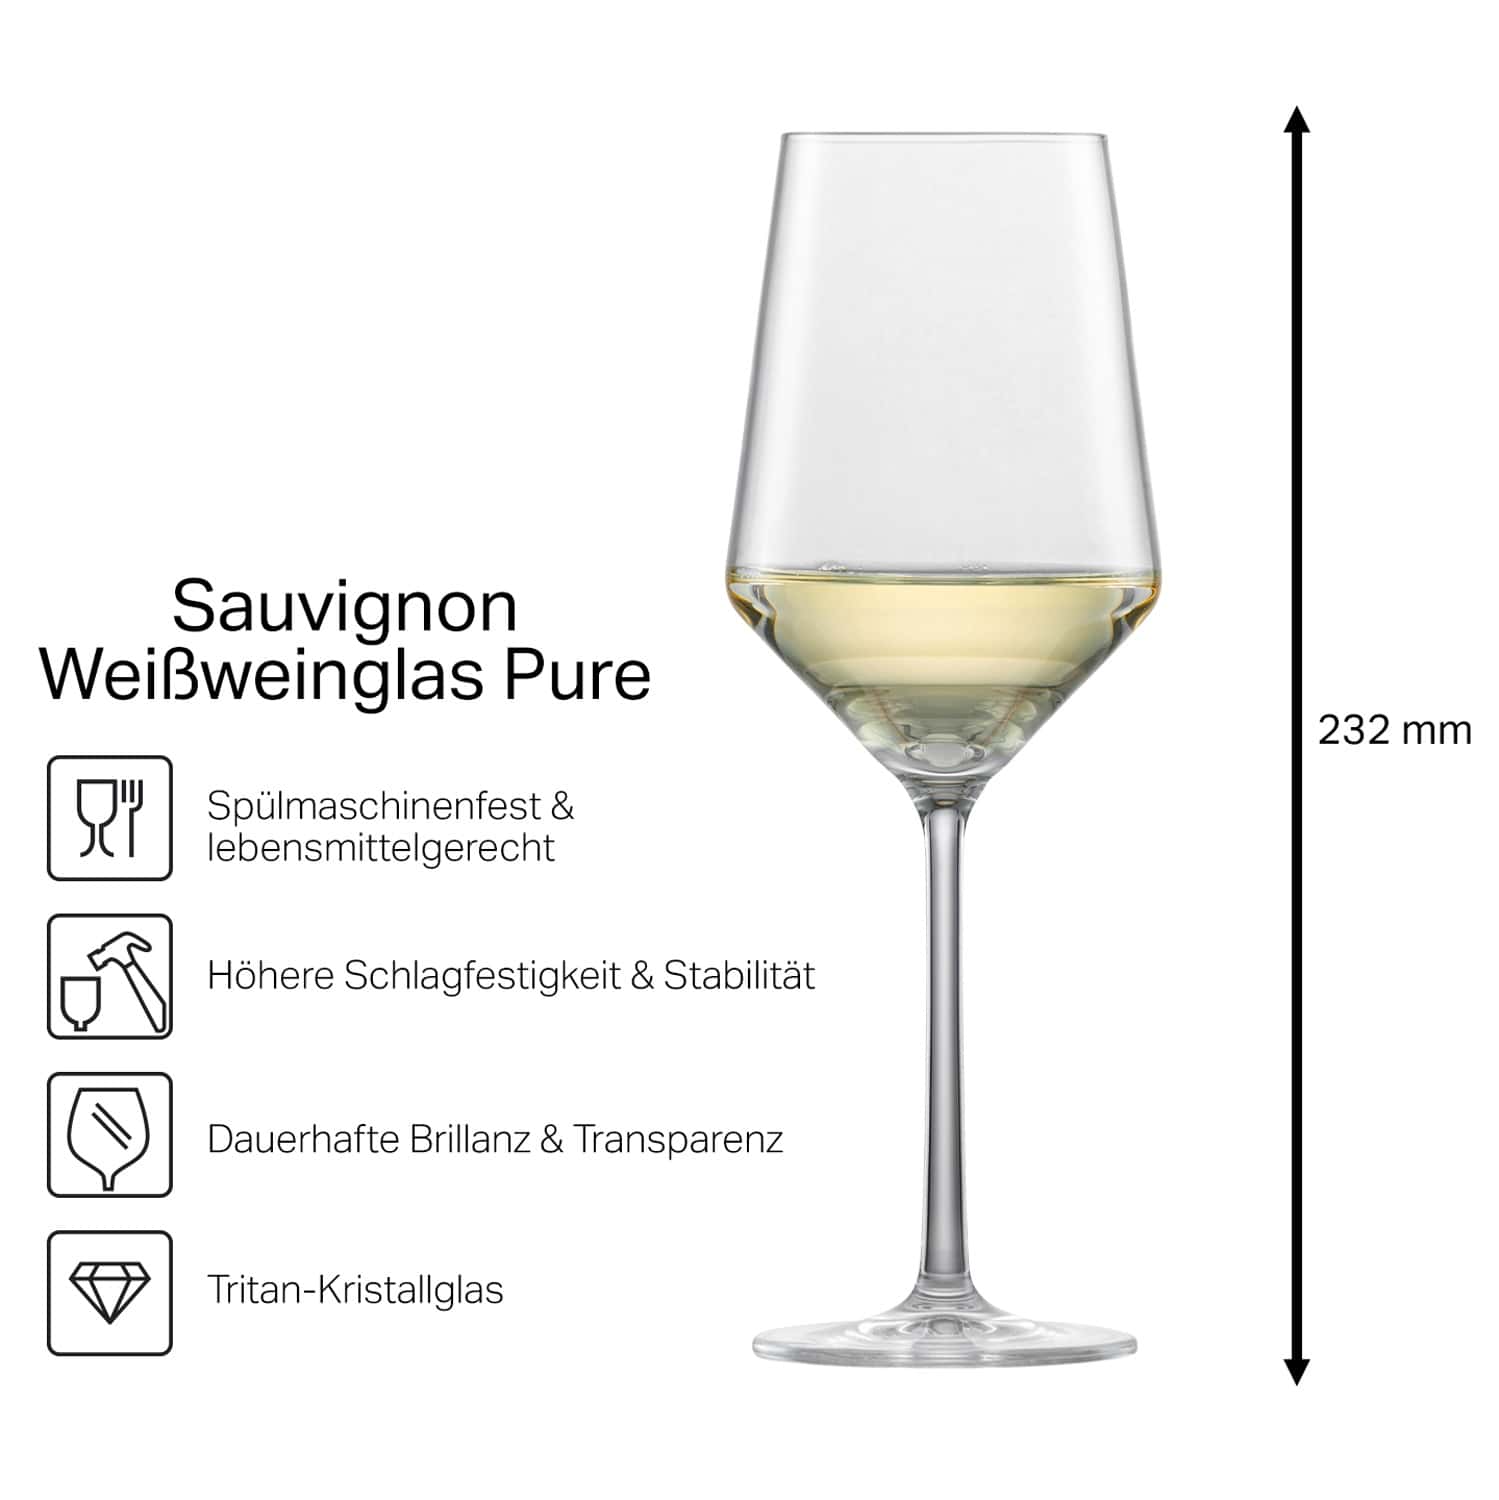 Schott Zwiesel Sauvignon Weißweinglas PURE mit Namen oder Wunschtext graviert (Weinrebe)